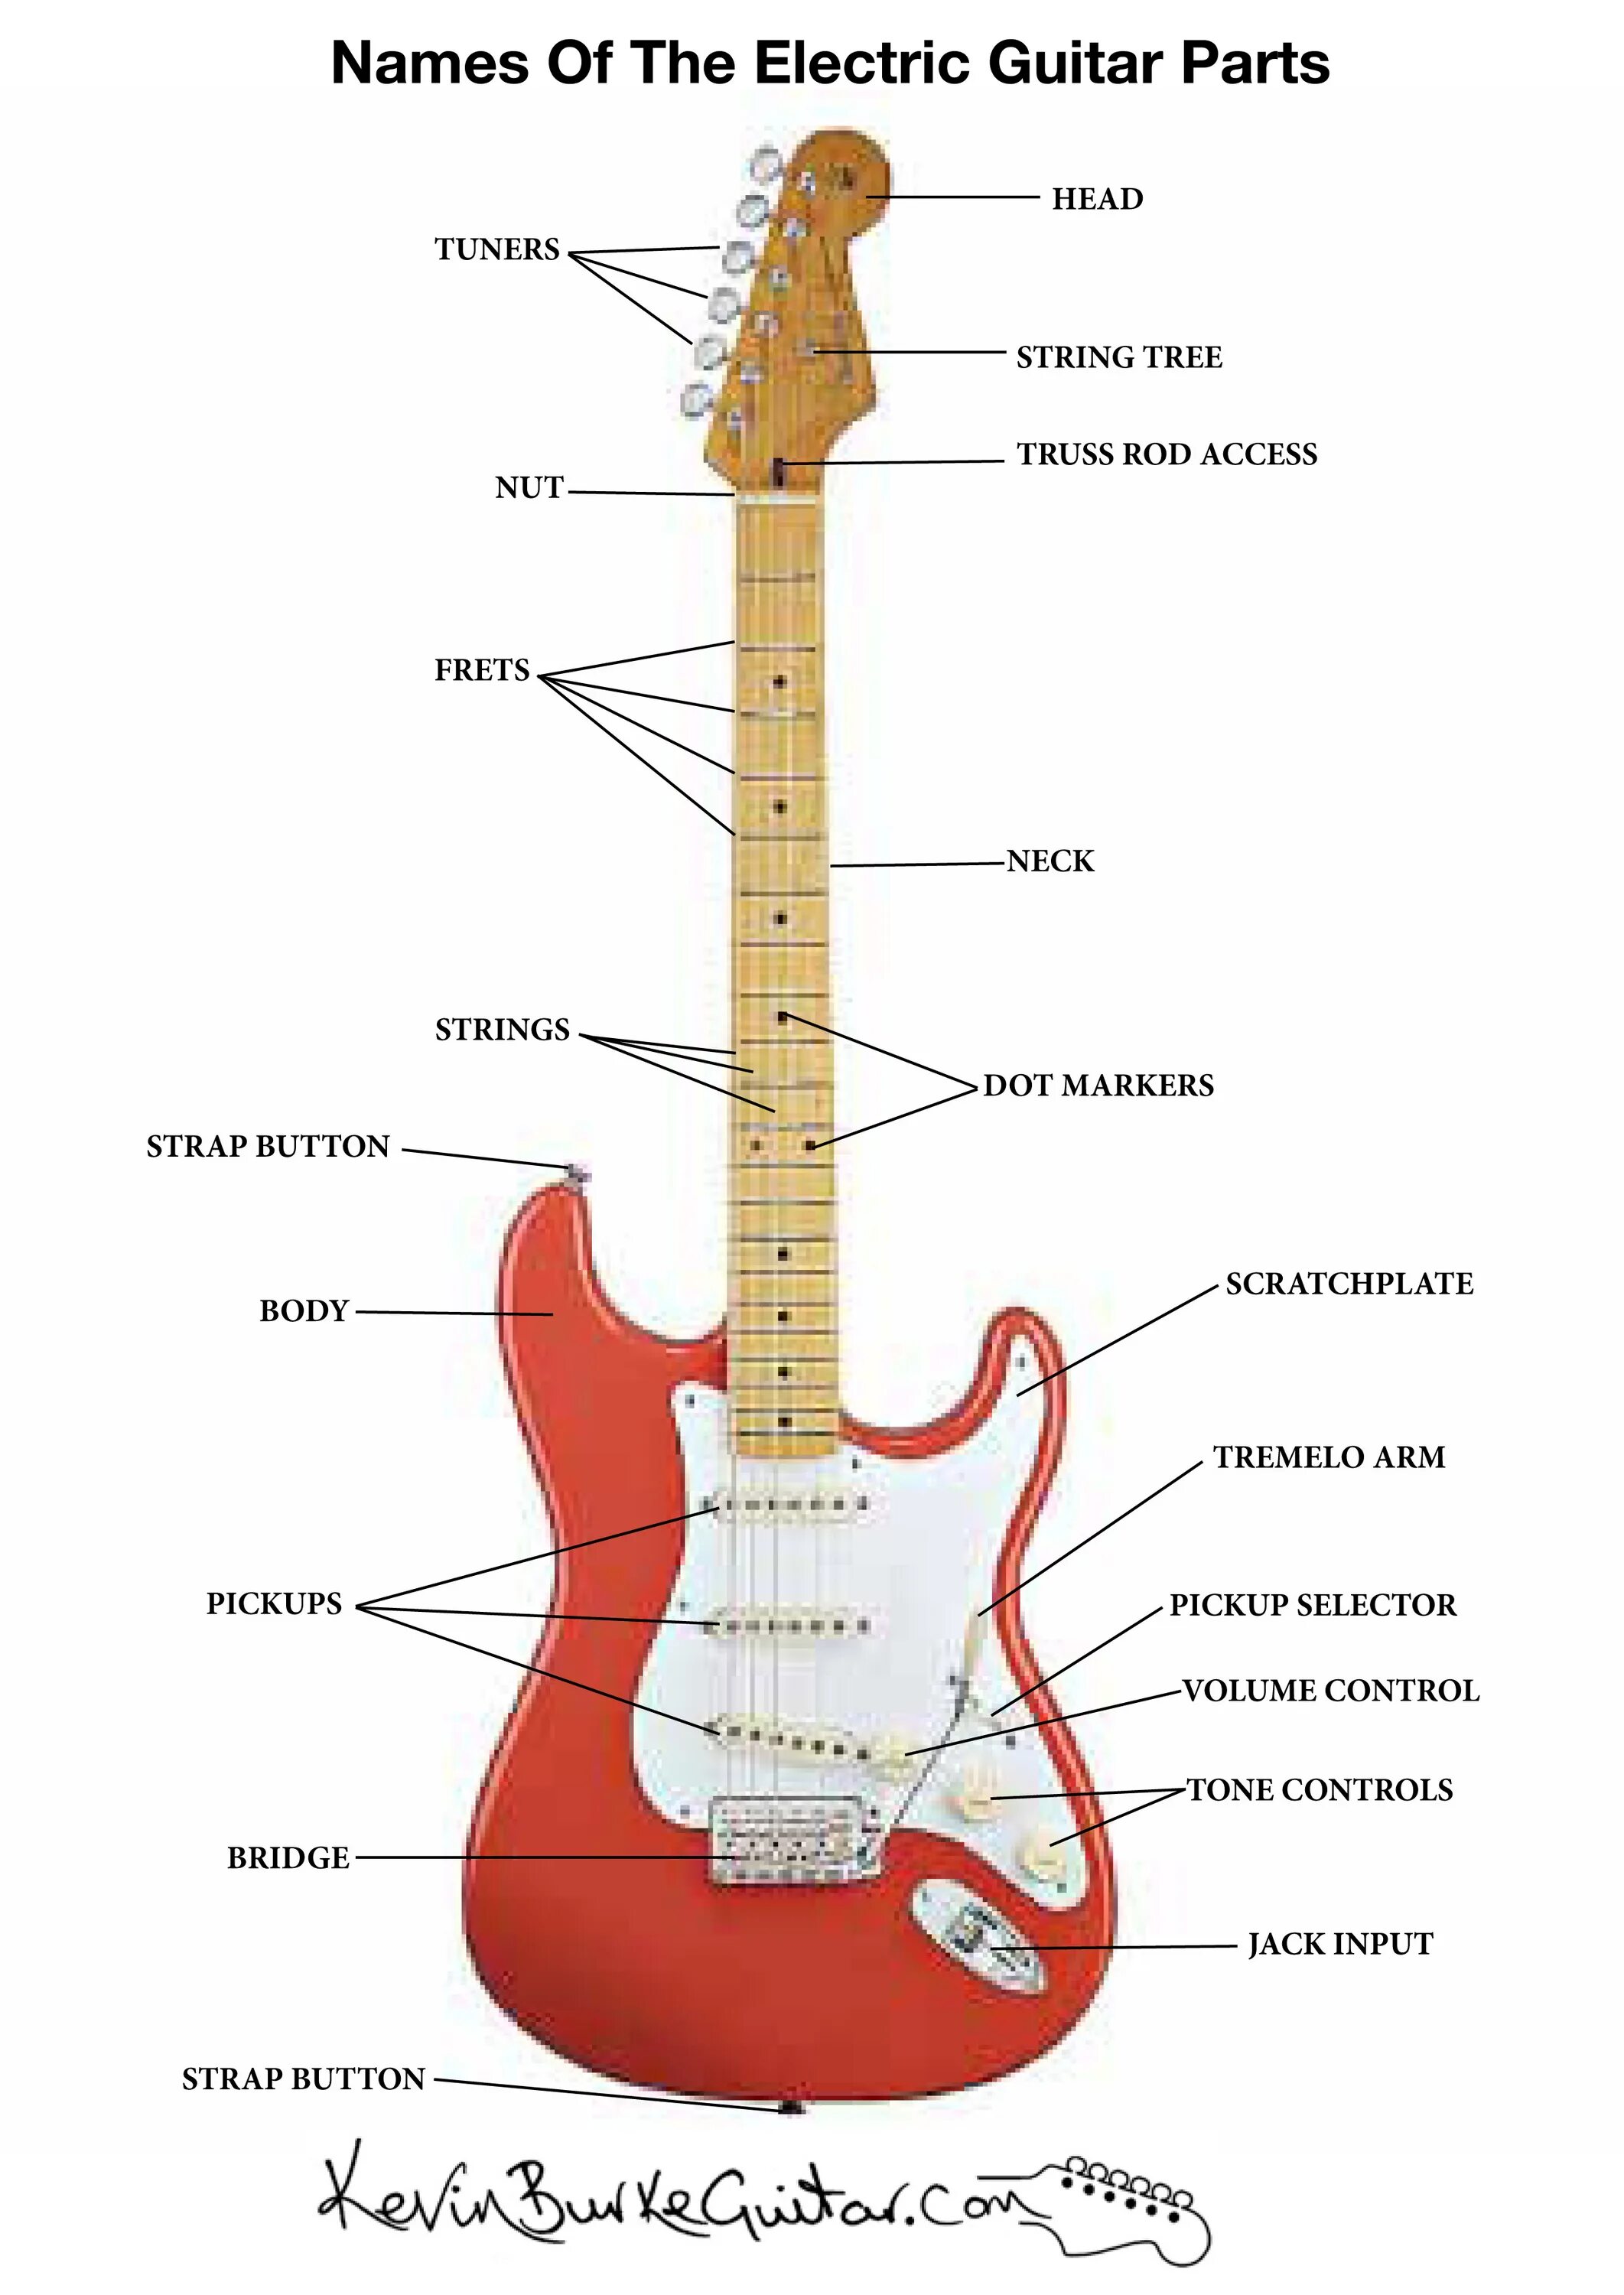 Строение гитары электрогитары. Строение гитары 6-ти струнной электрогитары. Название частей электрогитары. Название деталей гитары.